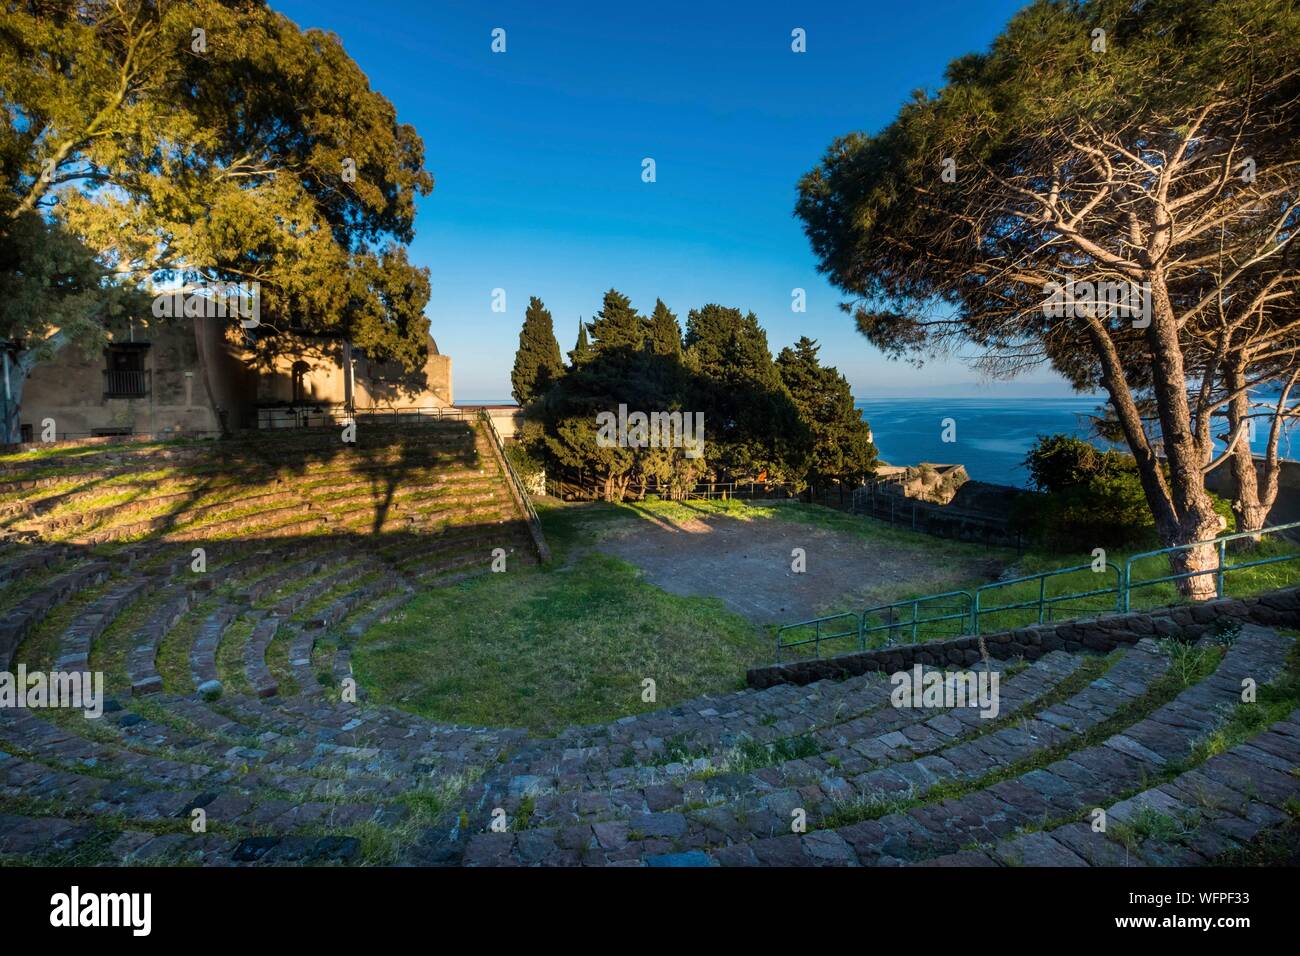 Italien, Sizilien, Liparische Inseln als Weltkulturerbe von der UNESCO, Lipari aufgeführt, dem griechisch-römischen Amphitheater (4 th-2 nd centurry v. Chr.) in der Zitadelle Gärten Stockfoto